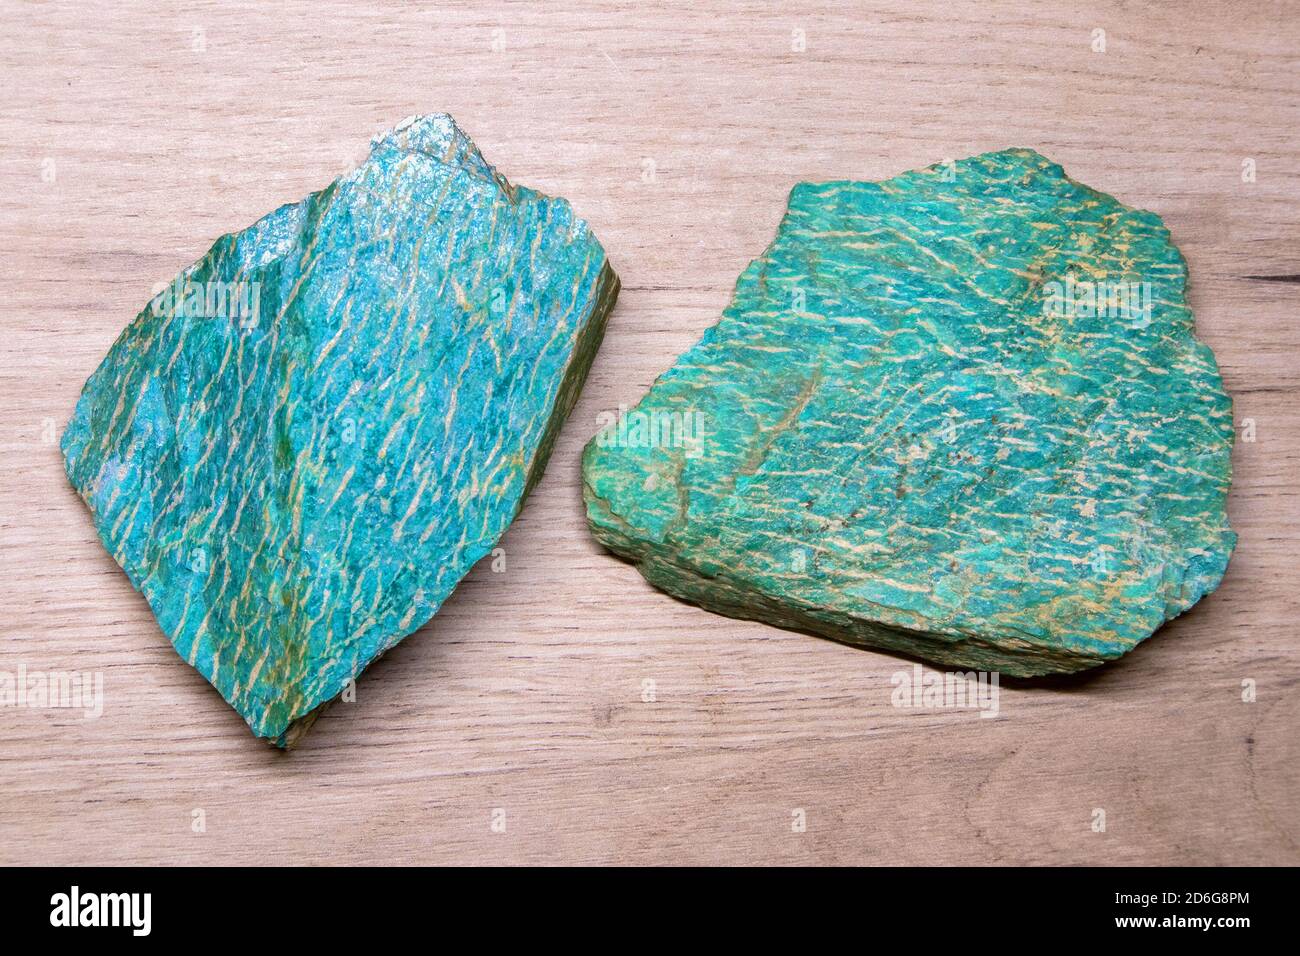 Zwei Stücke von schönen hellen semiprecious Mineral Amazonit liegen auf Eine hölzerne Oberfläche Stockfoto